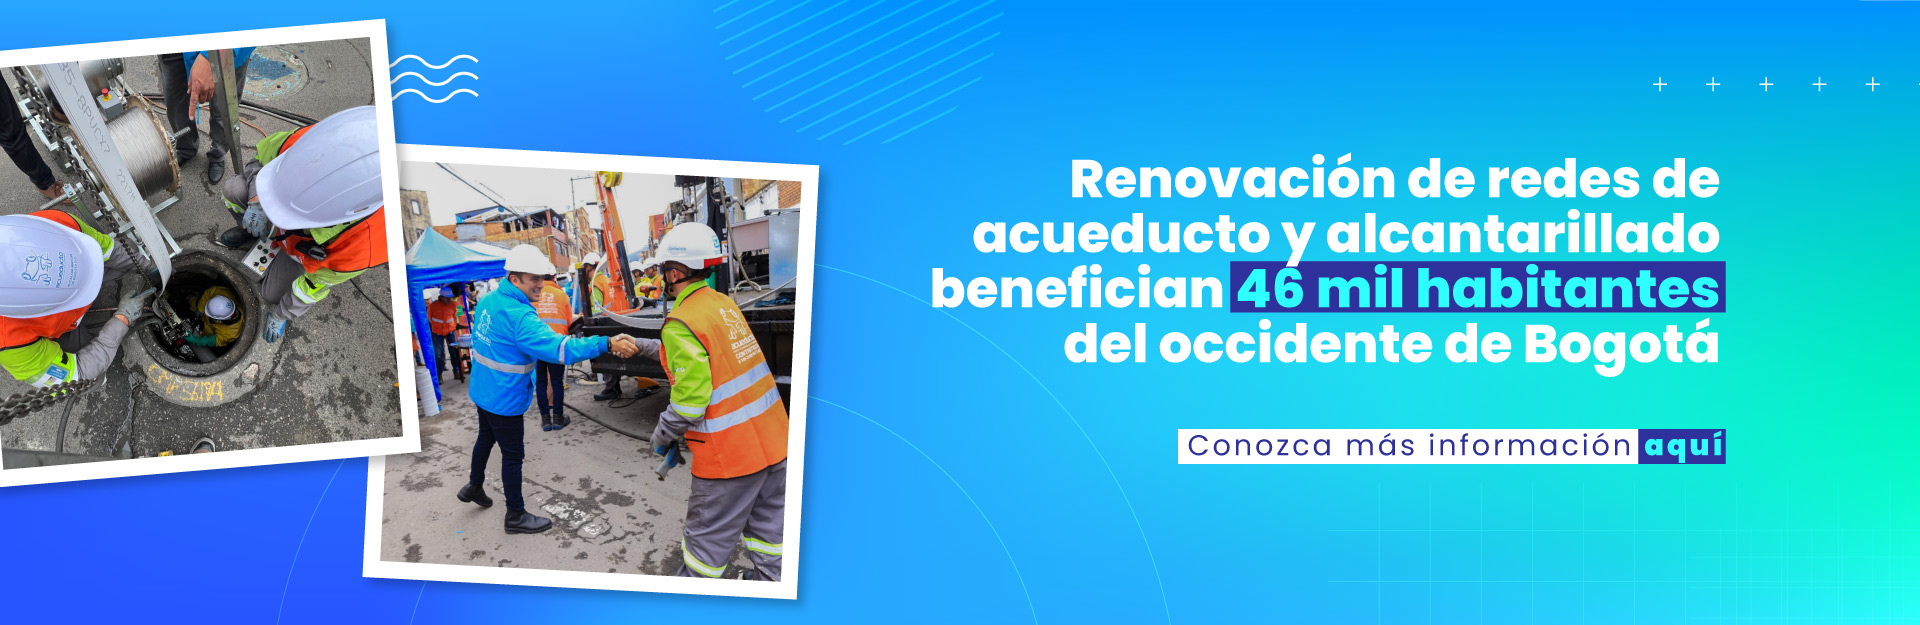 Con tecnología de punta la EAAB renueva las redes de acueducto y alcantarillado para beneficio de 46 mil habitantes del occidente de Bogotá